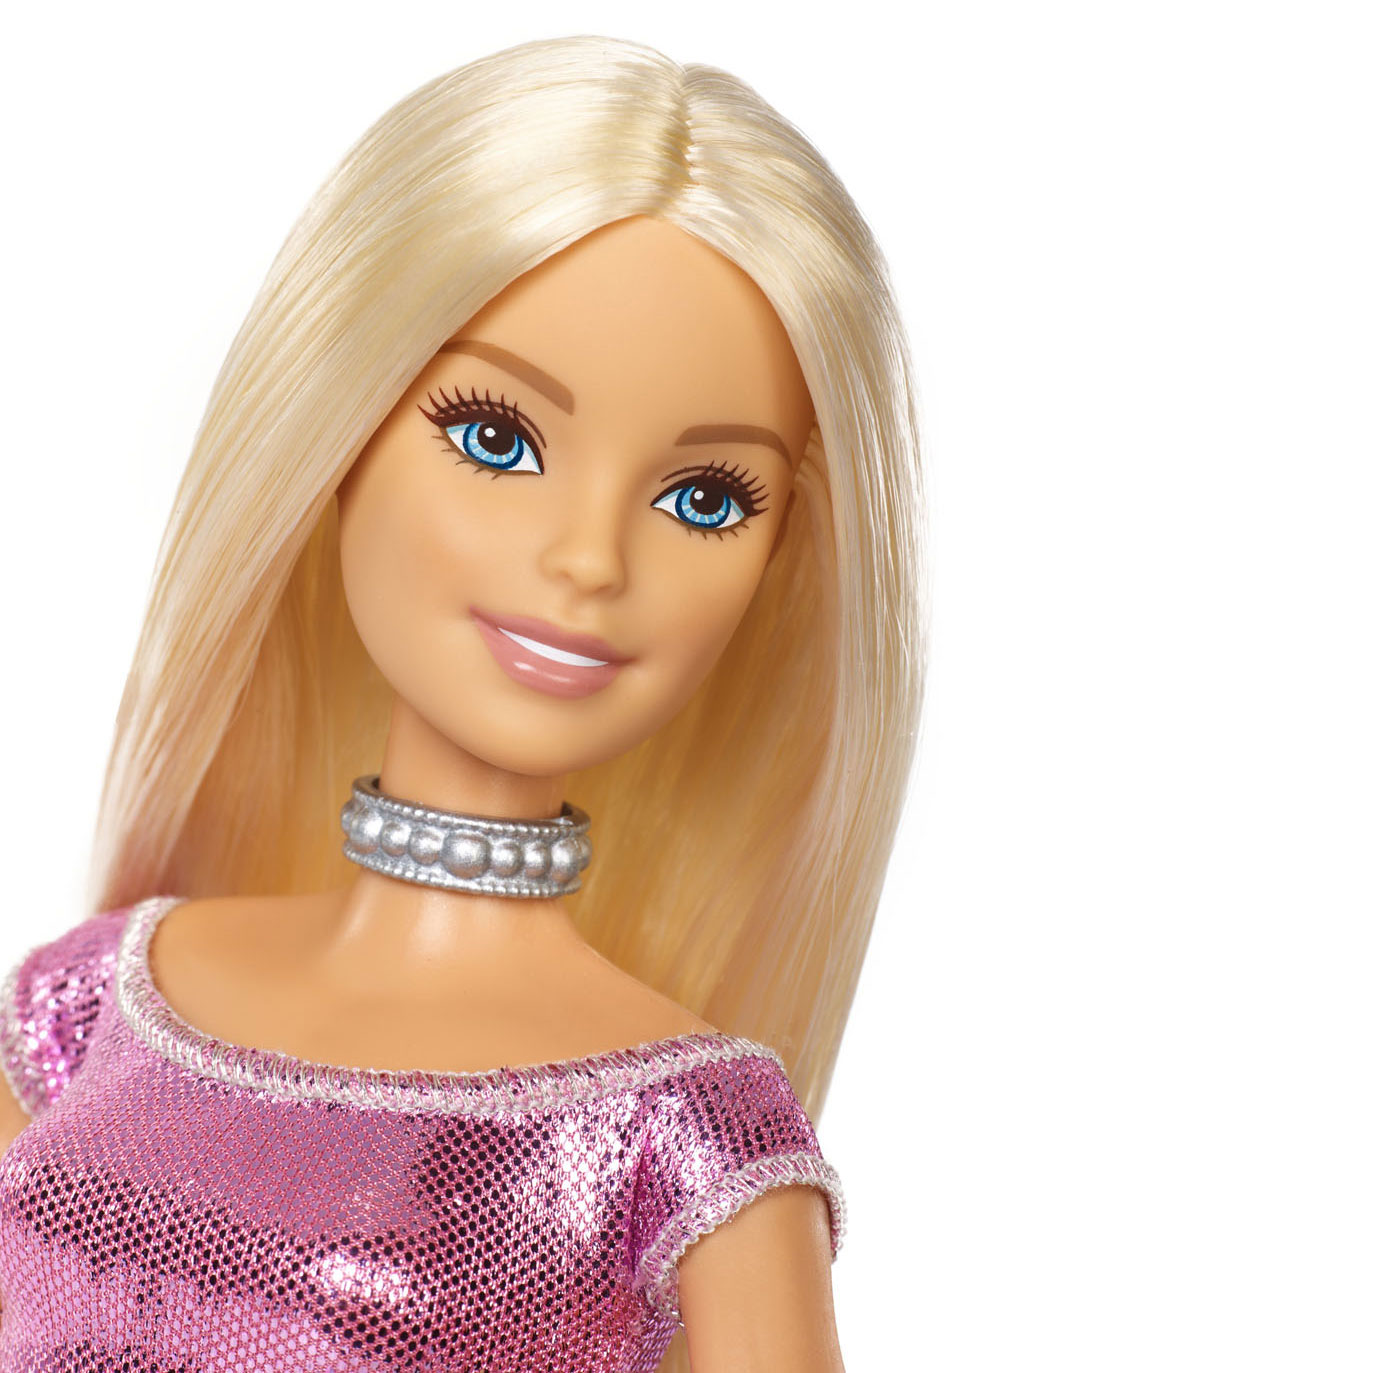 Barbie Verjaardagspop